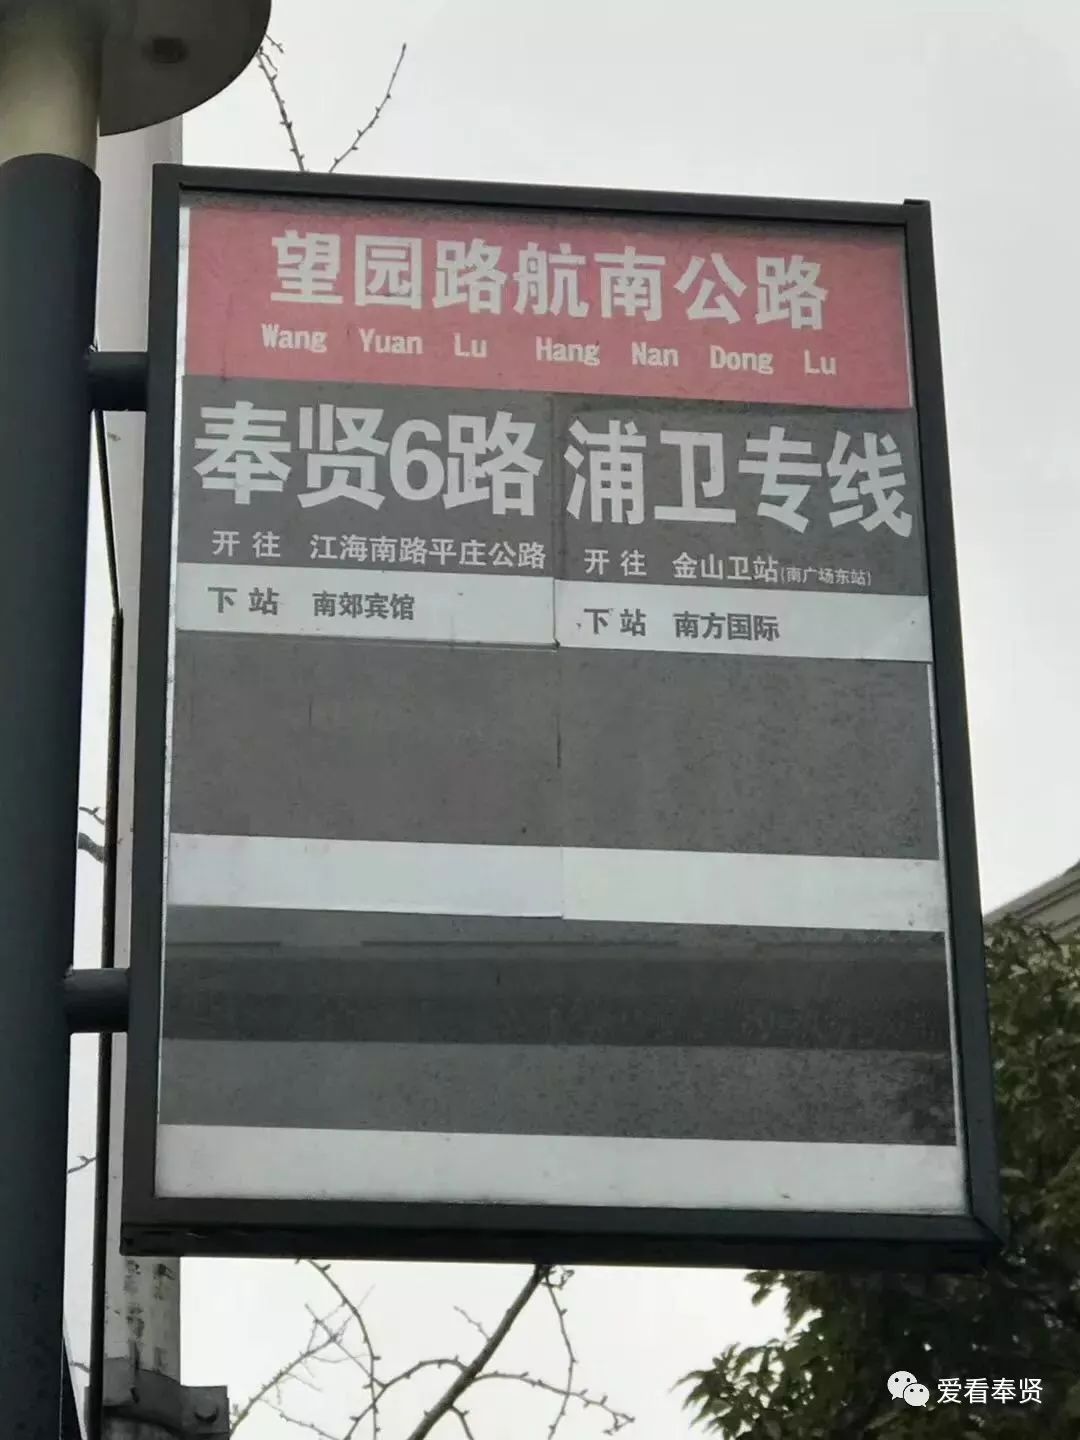 公交站牌拼音又写错啦~快改!